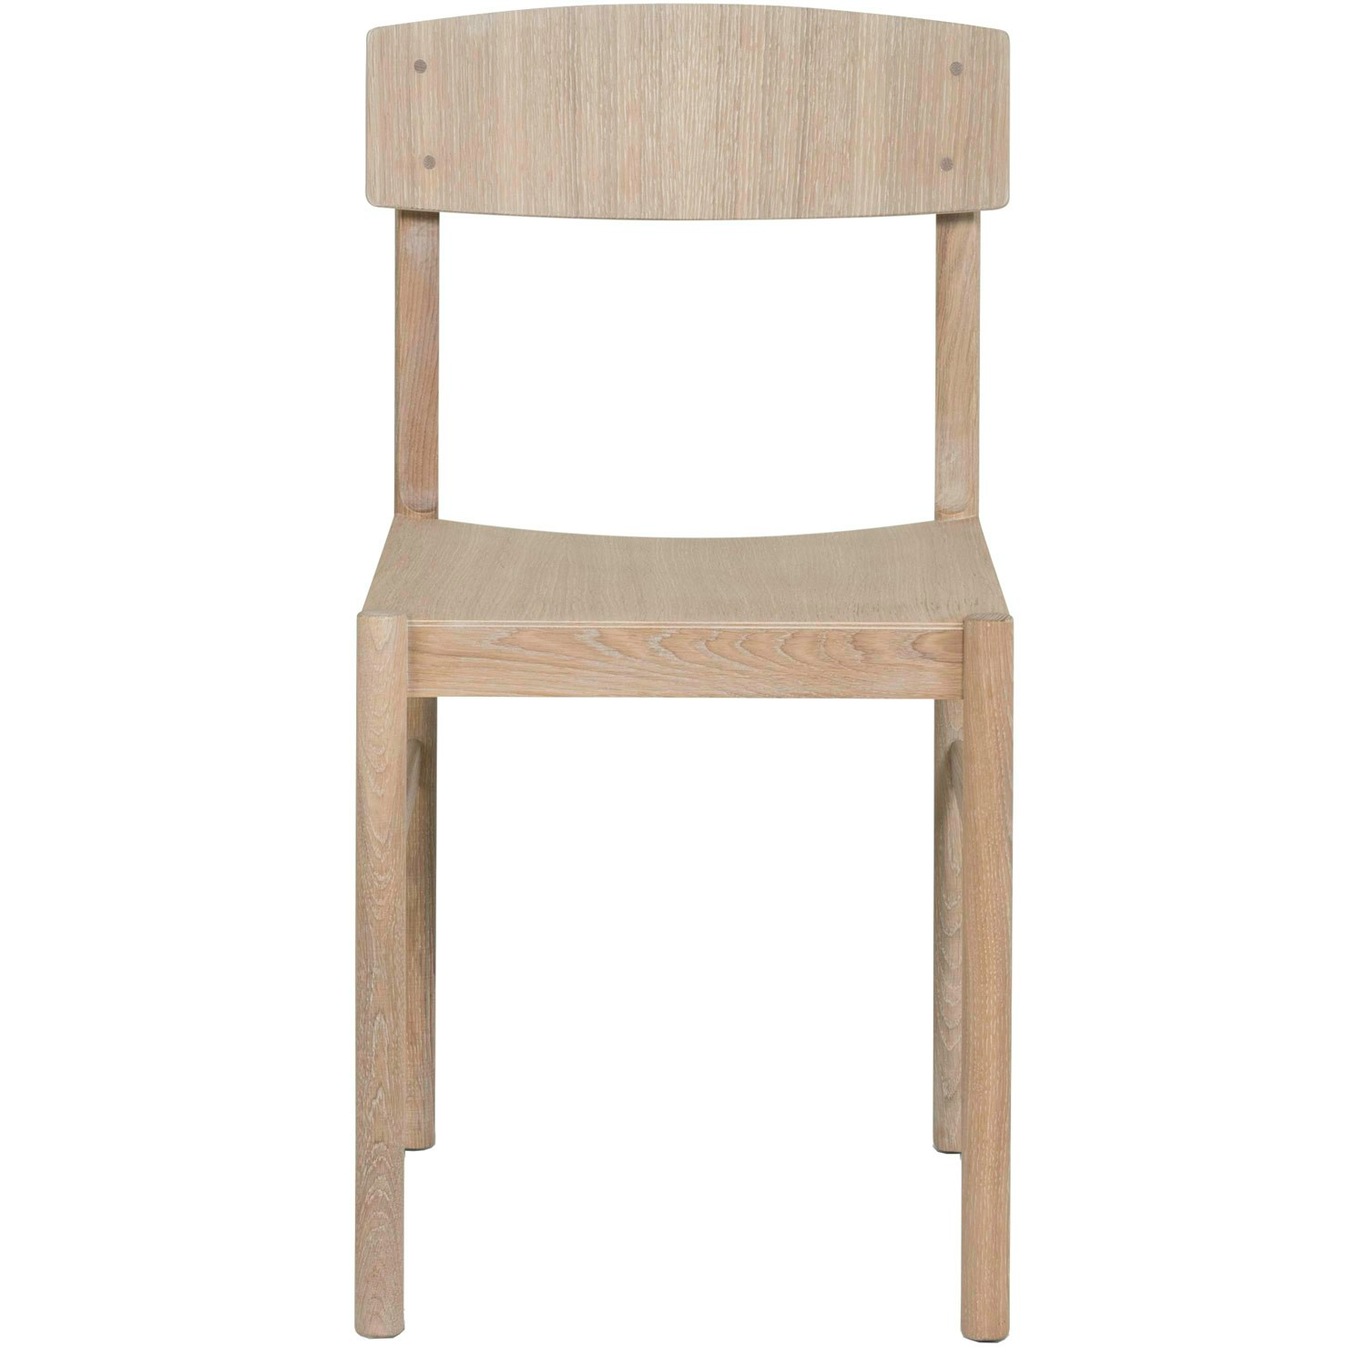 Rod Chair, White Wax Oiled Oak